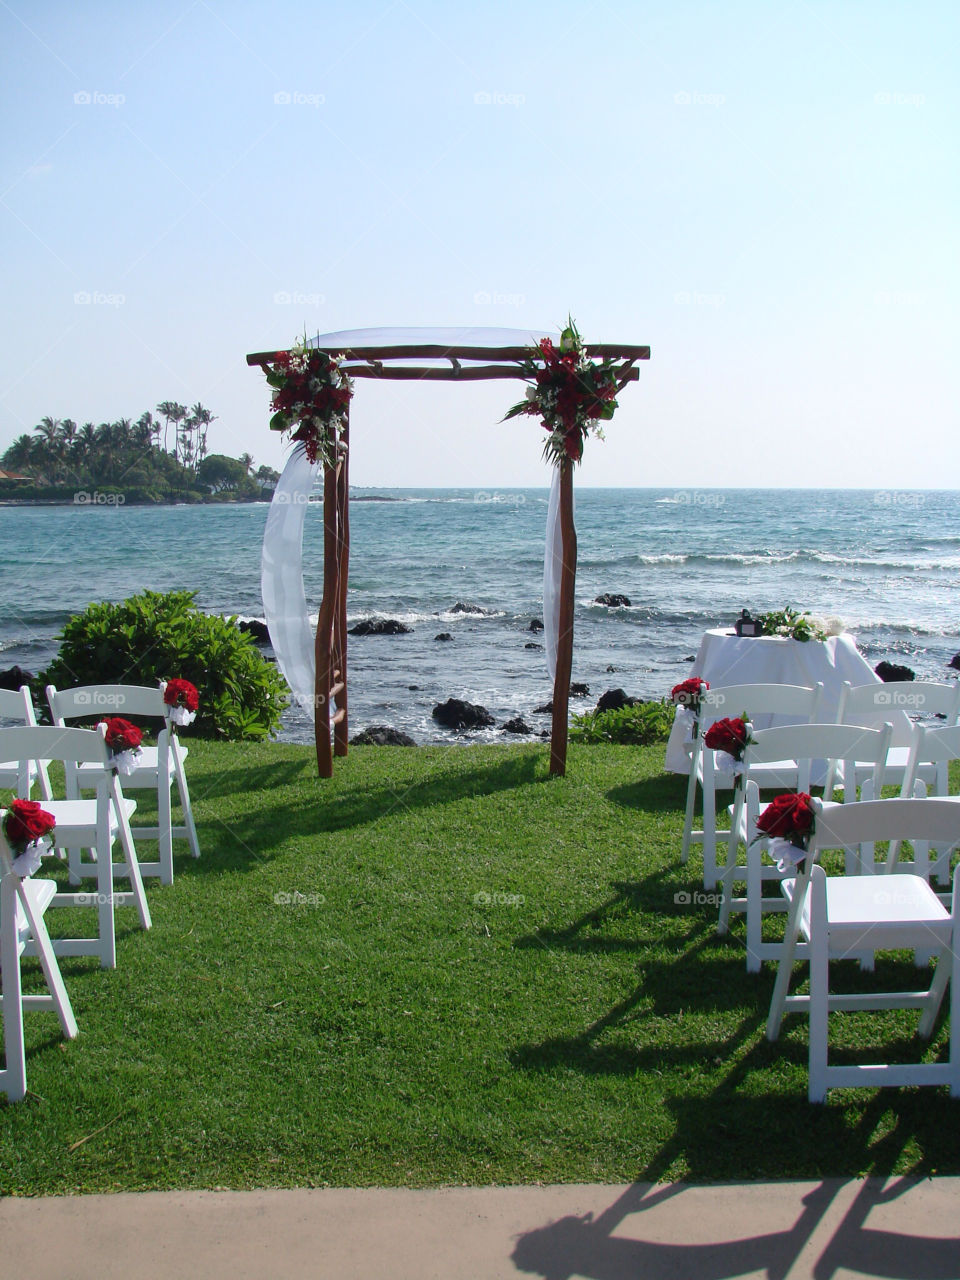 Hawaii wedding 